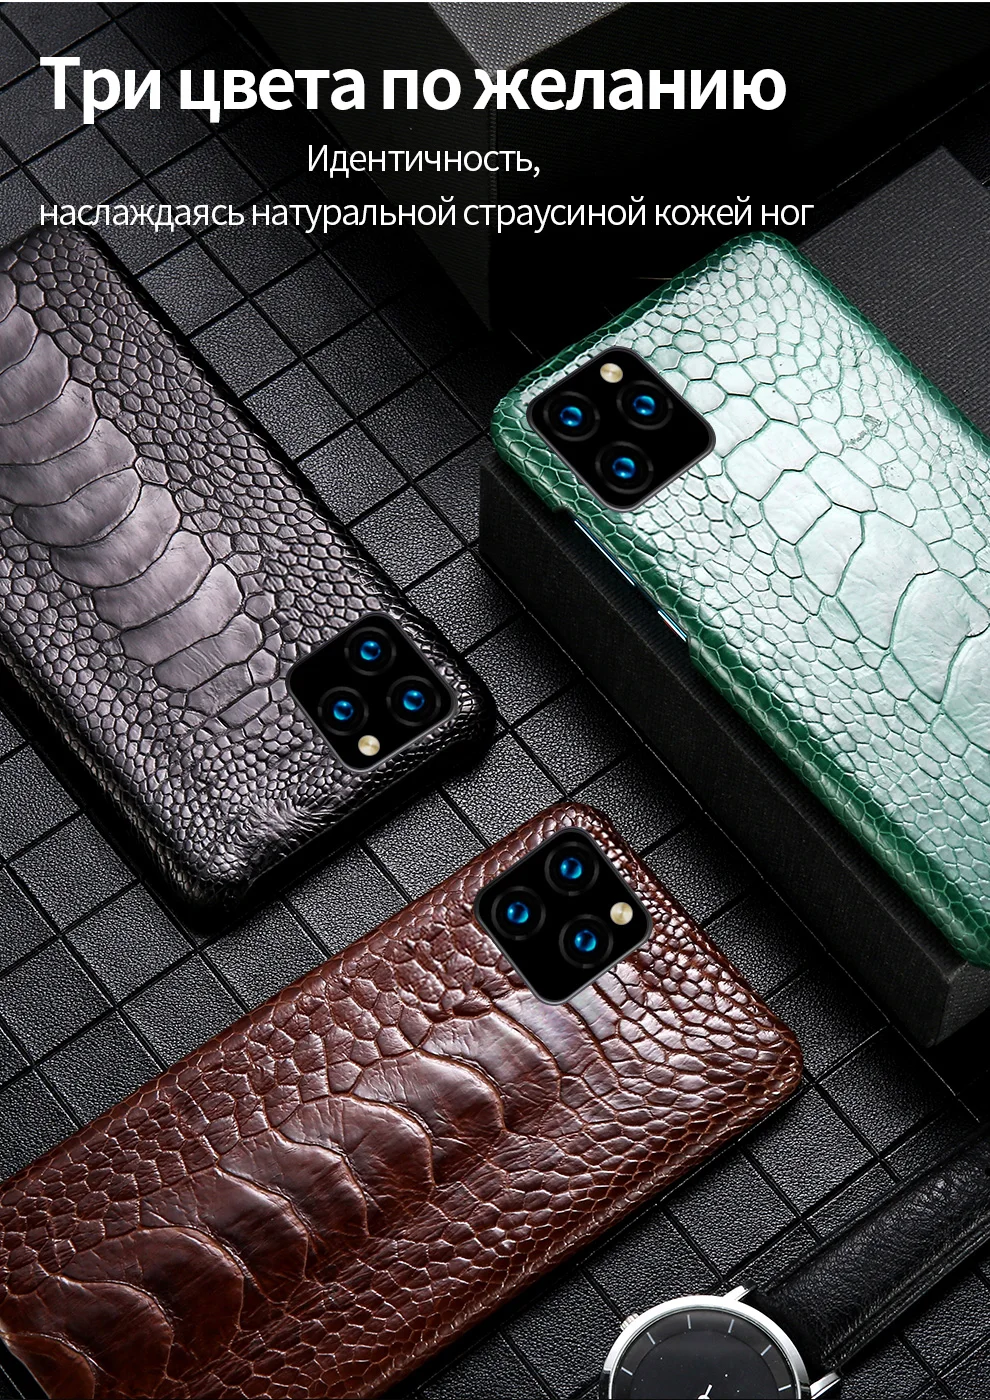 Страусиный кожаный чехол для телефона для Apple iPhone 11 11Pro 11 Pro MAX X XS XSmax XR 6 6s 8 7 Plus 5 SE 5S Роскошный чехол